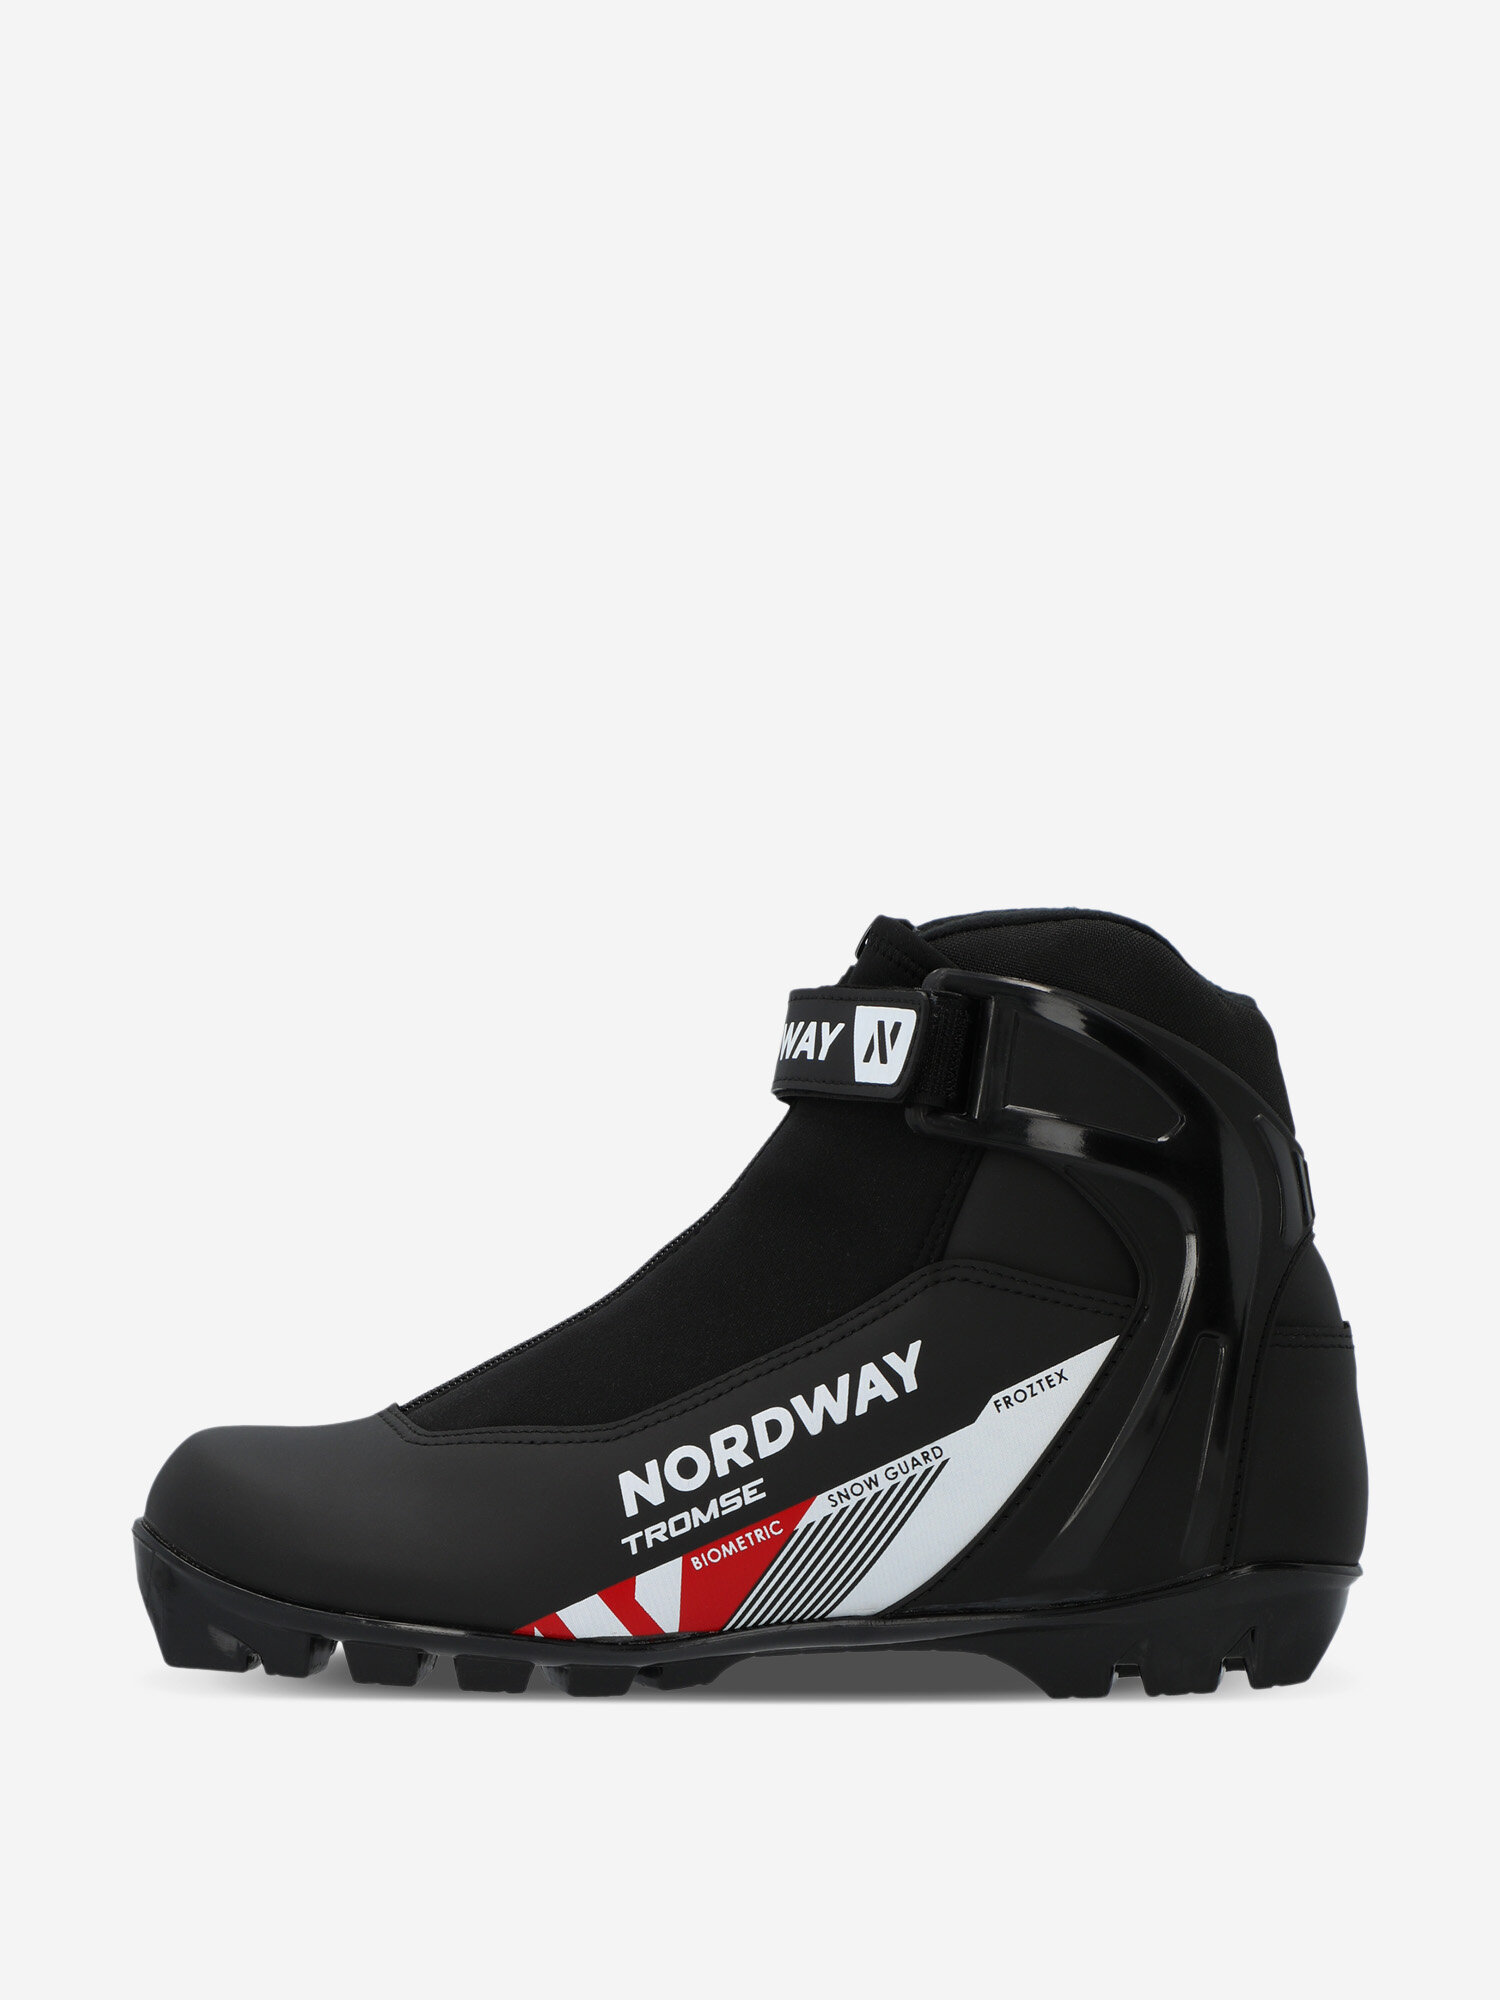 Ботинки для беговых лыж Nordway Tromse NNN Черный; RUS: 39, Ориг: 40